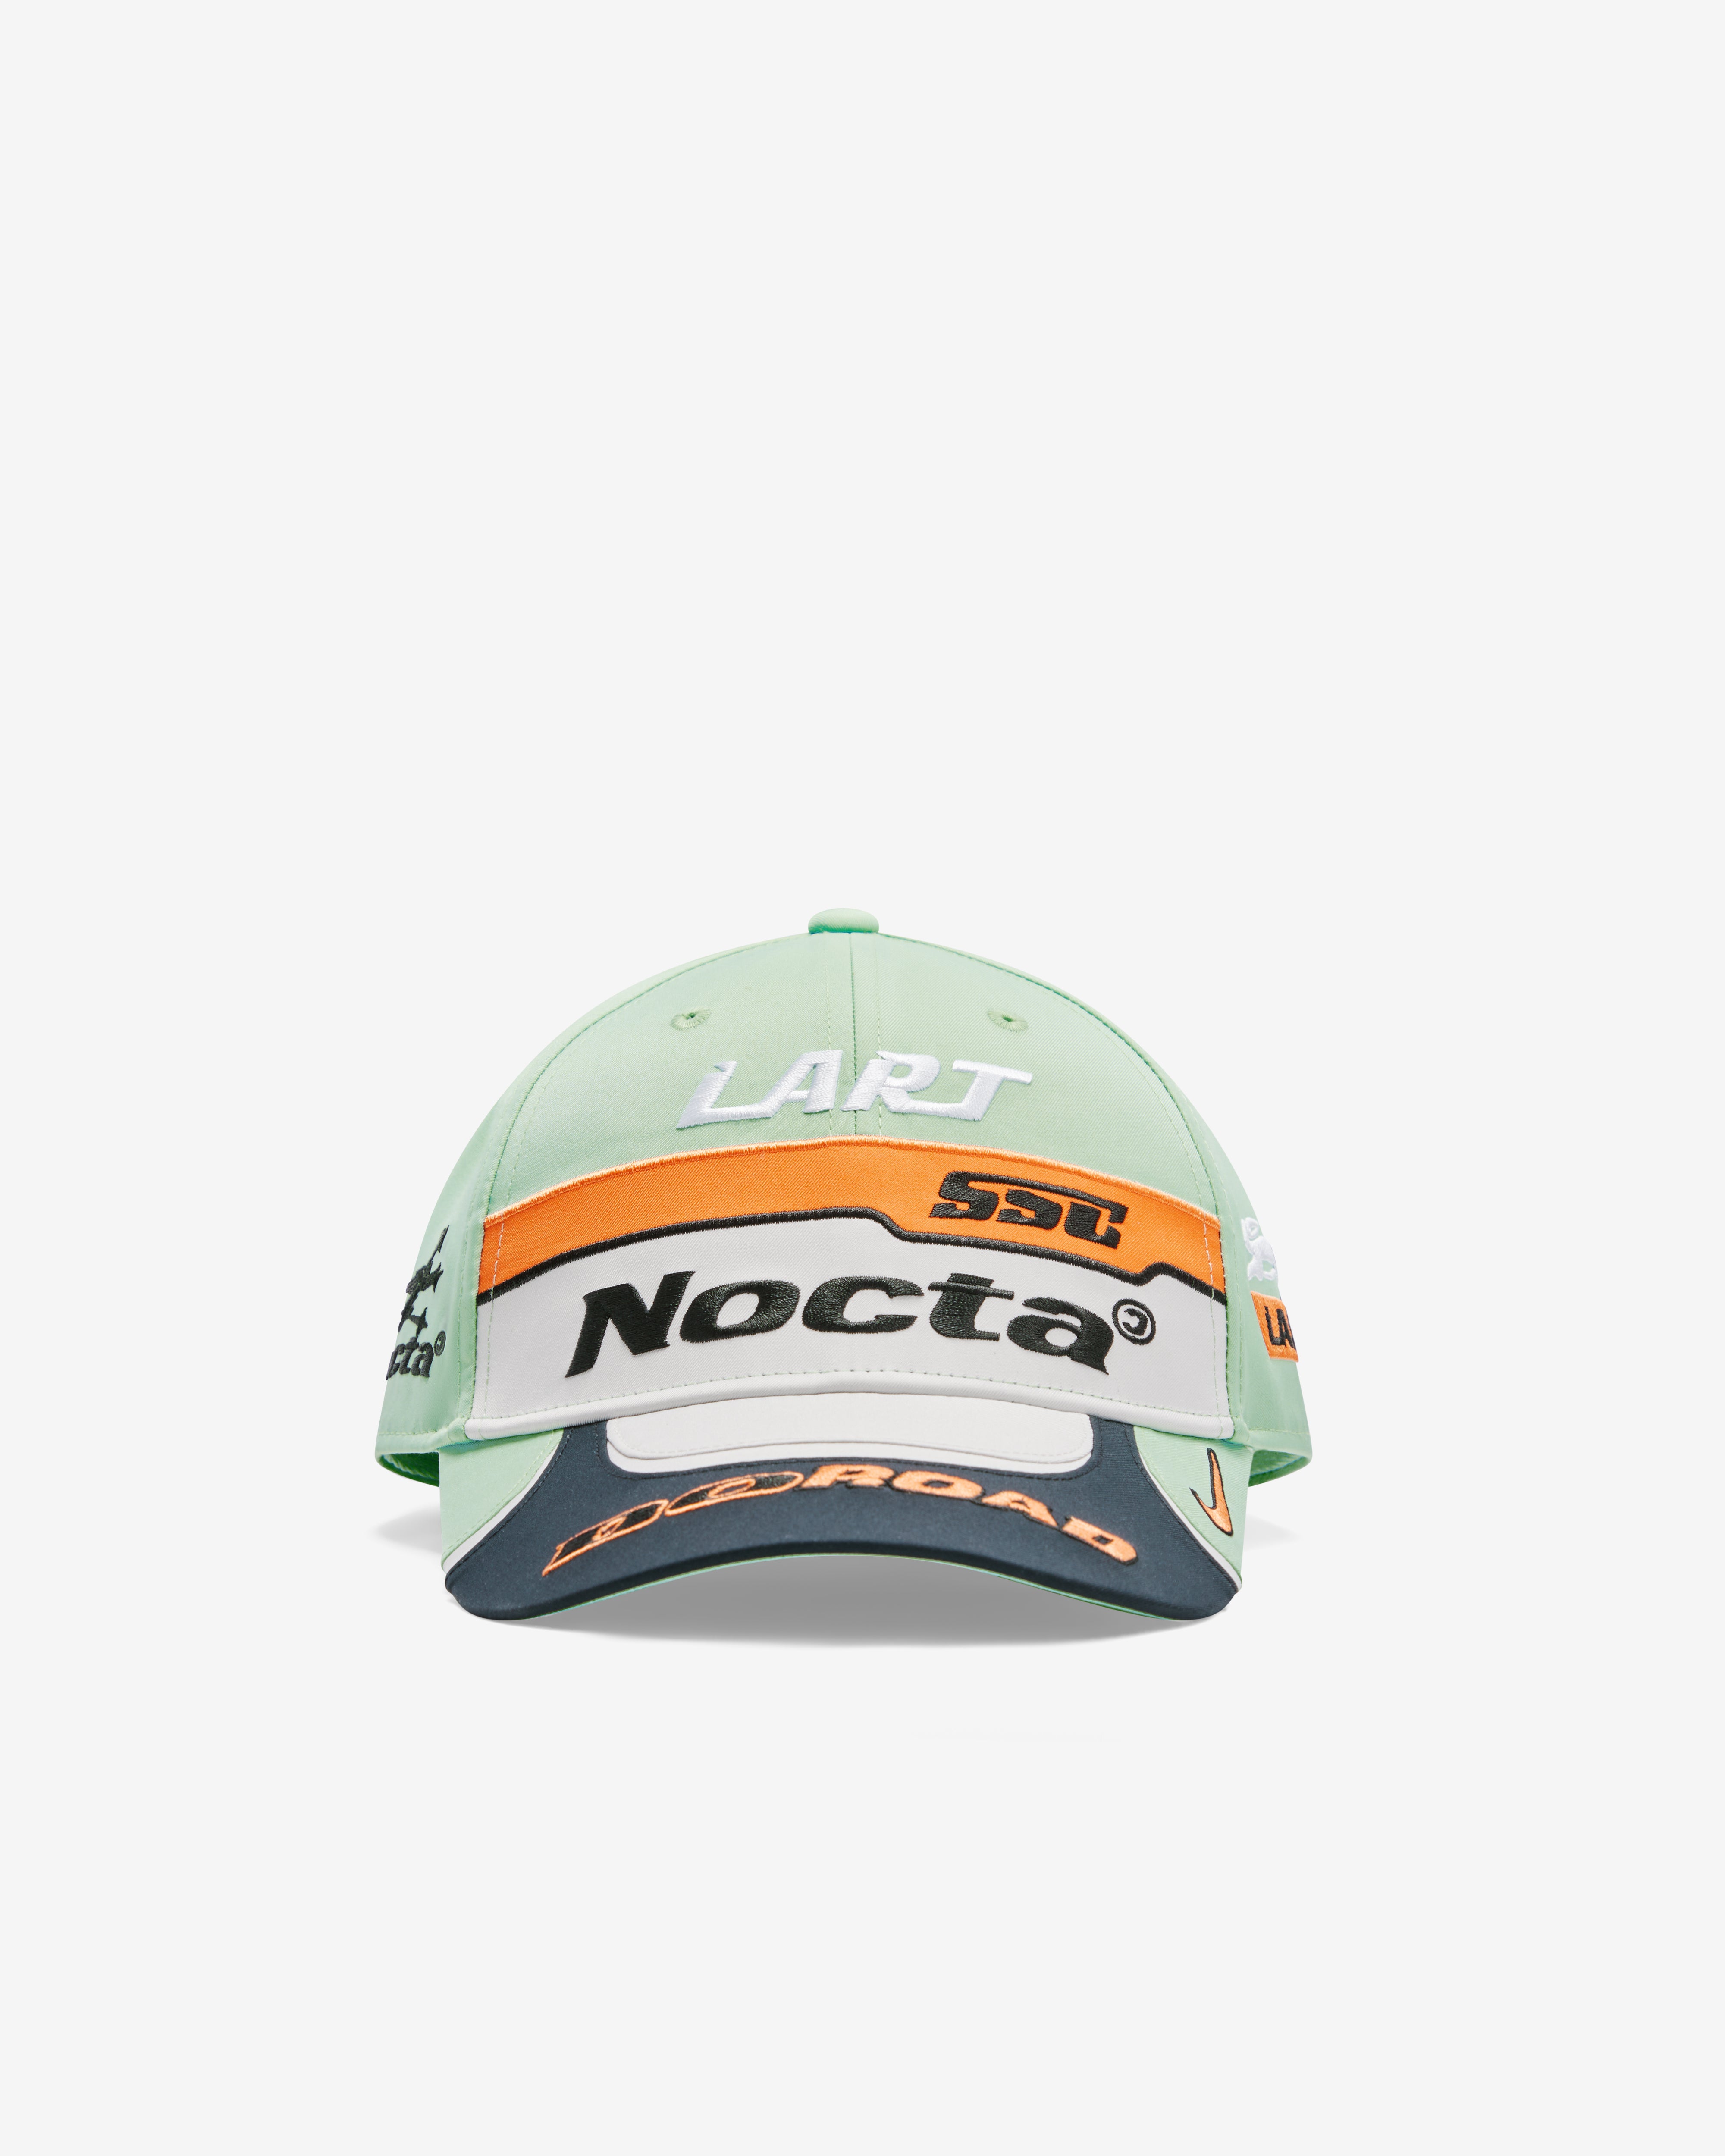 Nike x Nocta x L'art De L'automobile Men's Club Racing Cap 